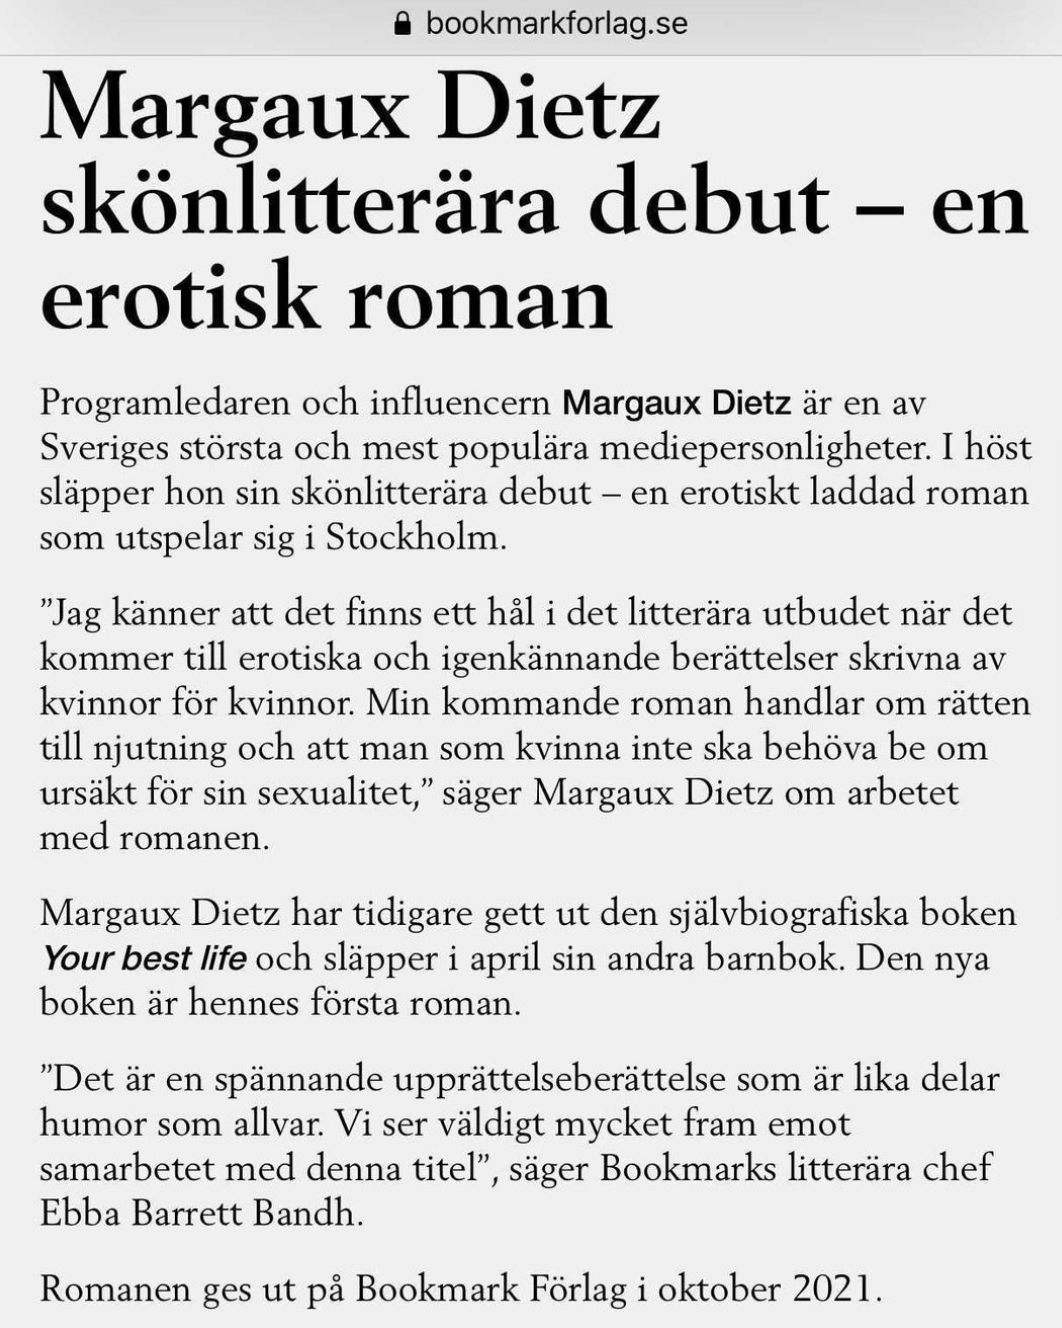 Margaux Dietz skönlitterära debut – en erotisk roman Programledaren och influencern Margaux Dietz är en av Sveriges största och mest populära mediepersonligheter. I höst släpper hon sin skönlitterära debut – en erotiskt laddad roman som utspelar sig i Stockholm. ”Jag känner att det finns ett hål i det litterära utbudet när det kommer till erotiska och igenkännande berättelser skrivna av kvinnor för kvinnor. Min kommande roman handlar om rätten till njutning och att man som kvinna inte ska behöva be om ursäkt för sin sexualitet,” säger Margaux Dietz om arbetet med romanen. Margaux Dietz har tidigare gett ut den självbiografiska boken Your best life och släpper i april sin andra barnbok. Den nya boken är hennes första roman. ”Det är en spännande upprättelseberättelse som är lika delar humor som allvar. Vi ser väldigt mycket fram emot samarbetet med denna titel”, säger Bookmarks litterära chef Ebba Barrett Bandh. Romanen ges ut på Bookmark Förlag i oktober 2021.